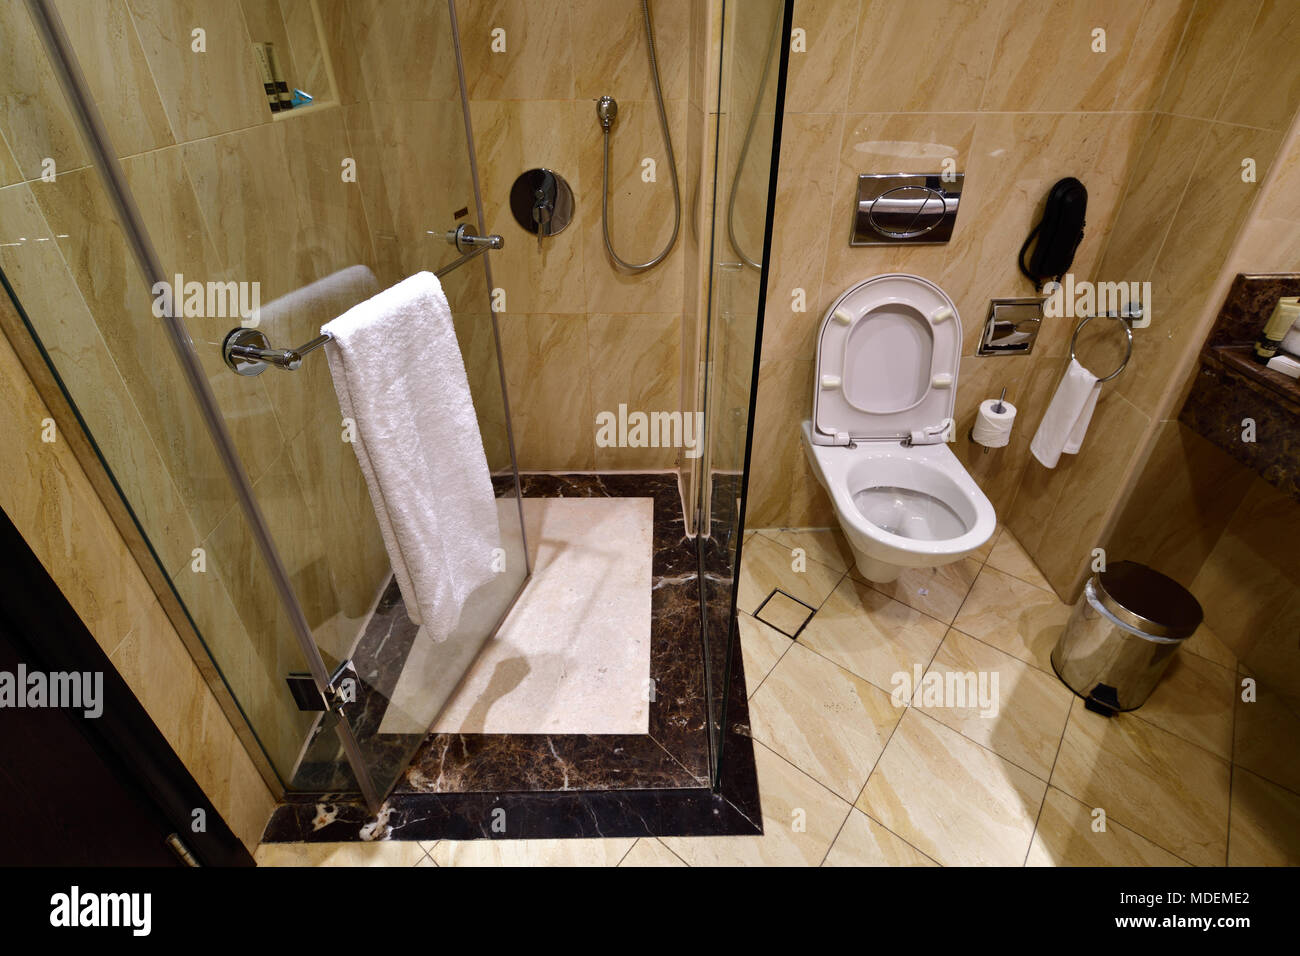 Douche et toilettes dans la salle de bains Banque D'Images